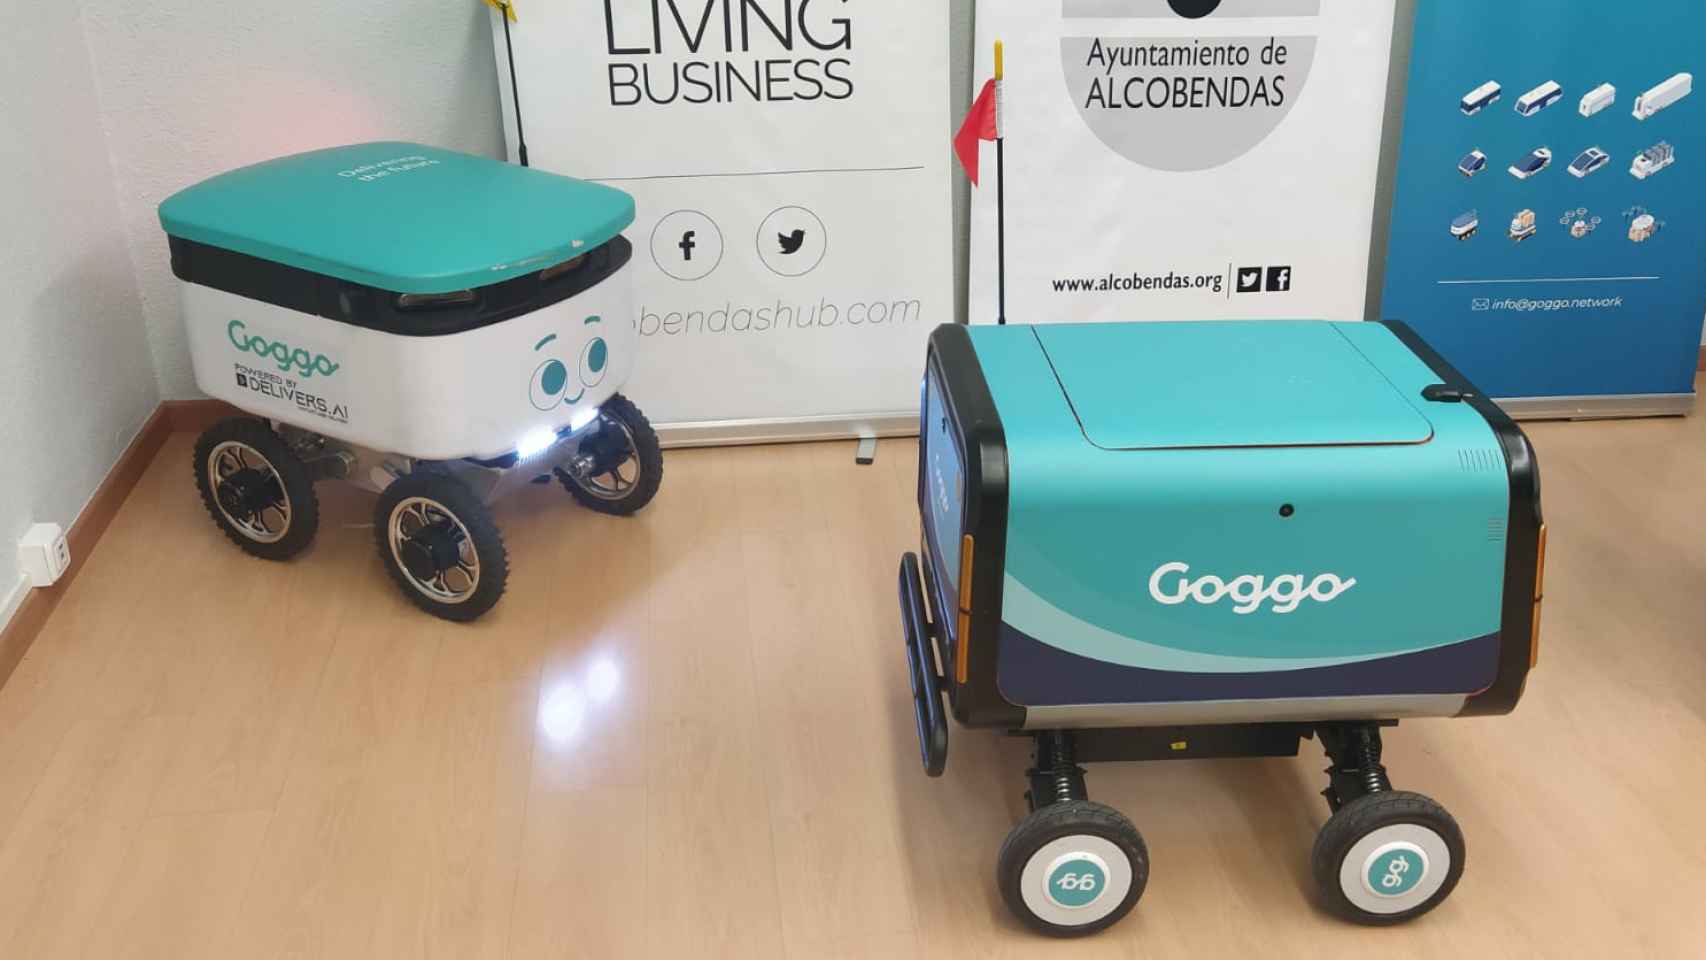 Dos de los robots de Goggo, durante la presentación.